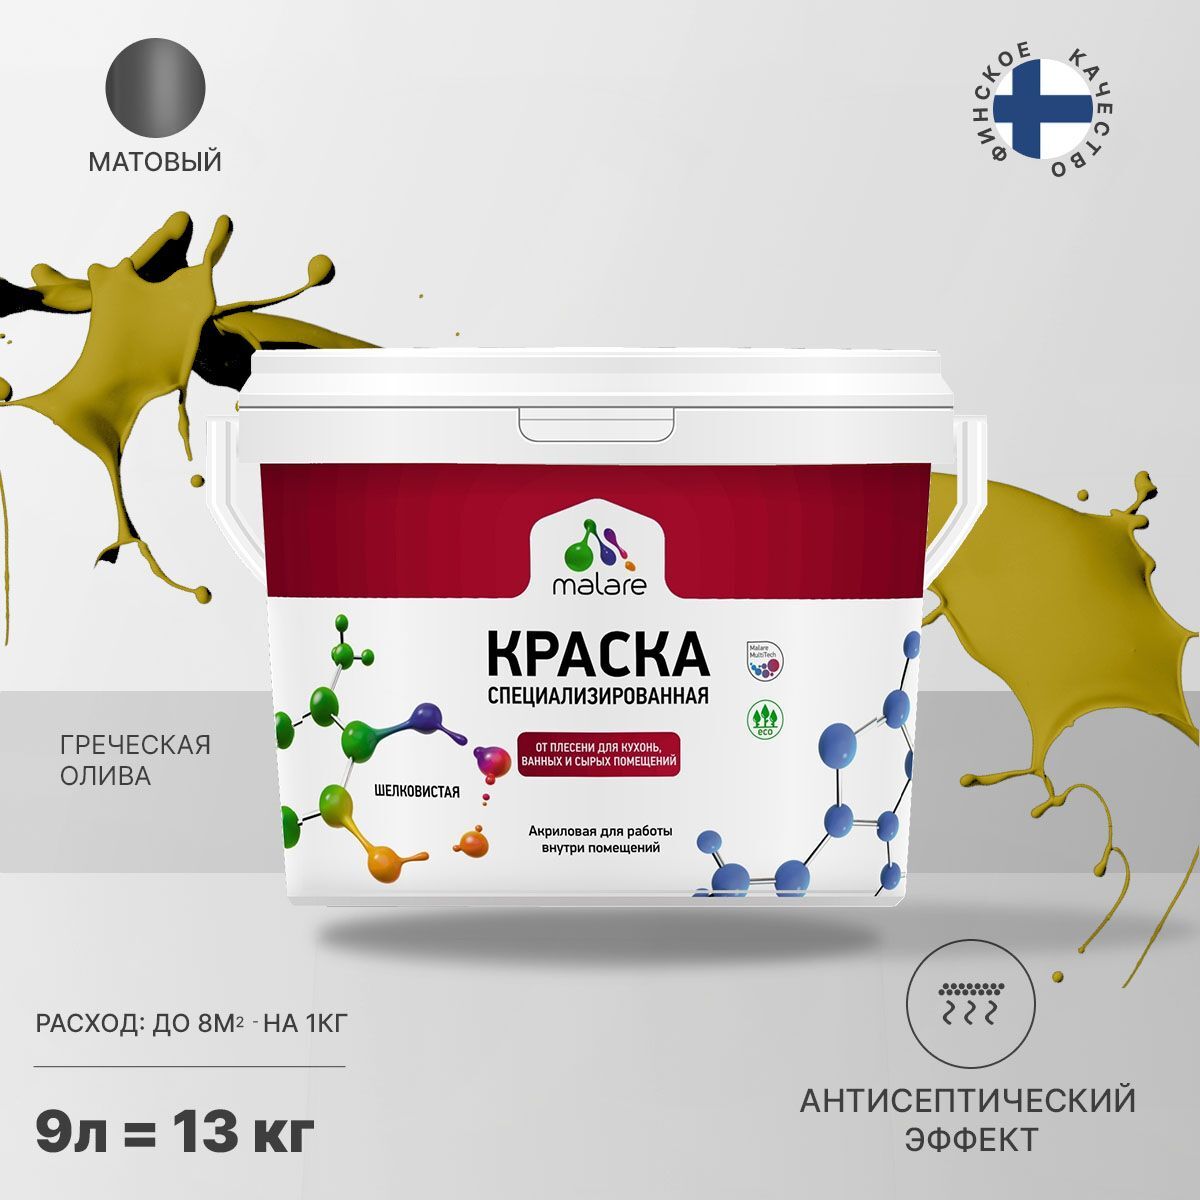 Краска Malare Professional Biosept от плесени и грибка, Акриловая, 13 кг греческая олива